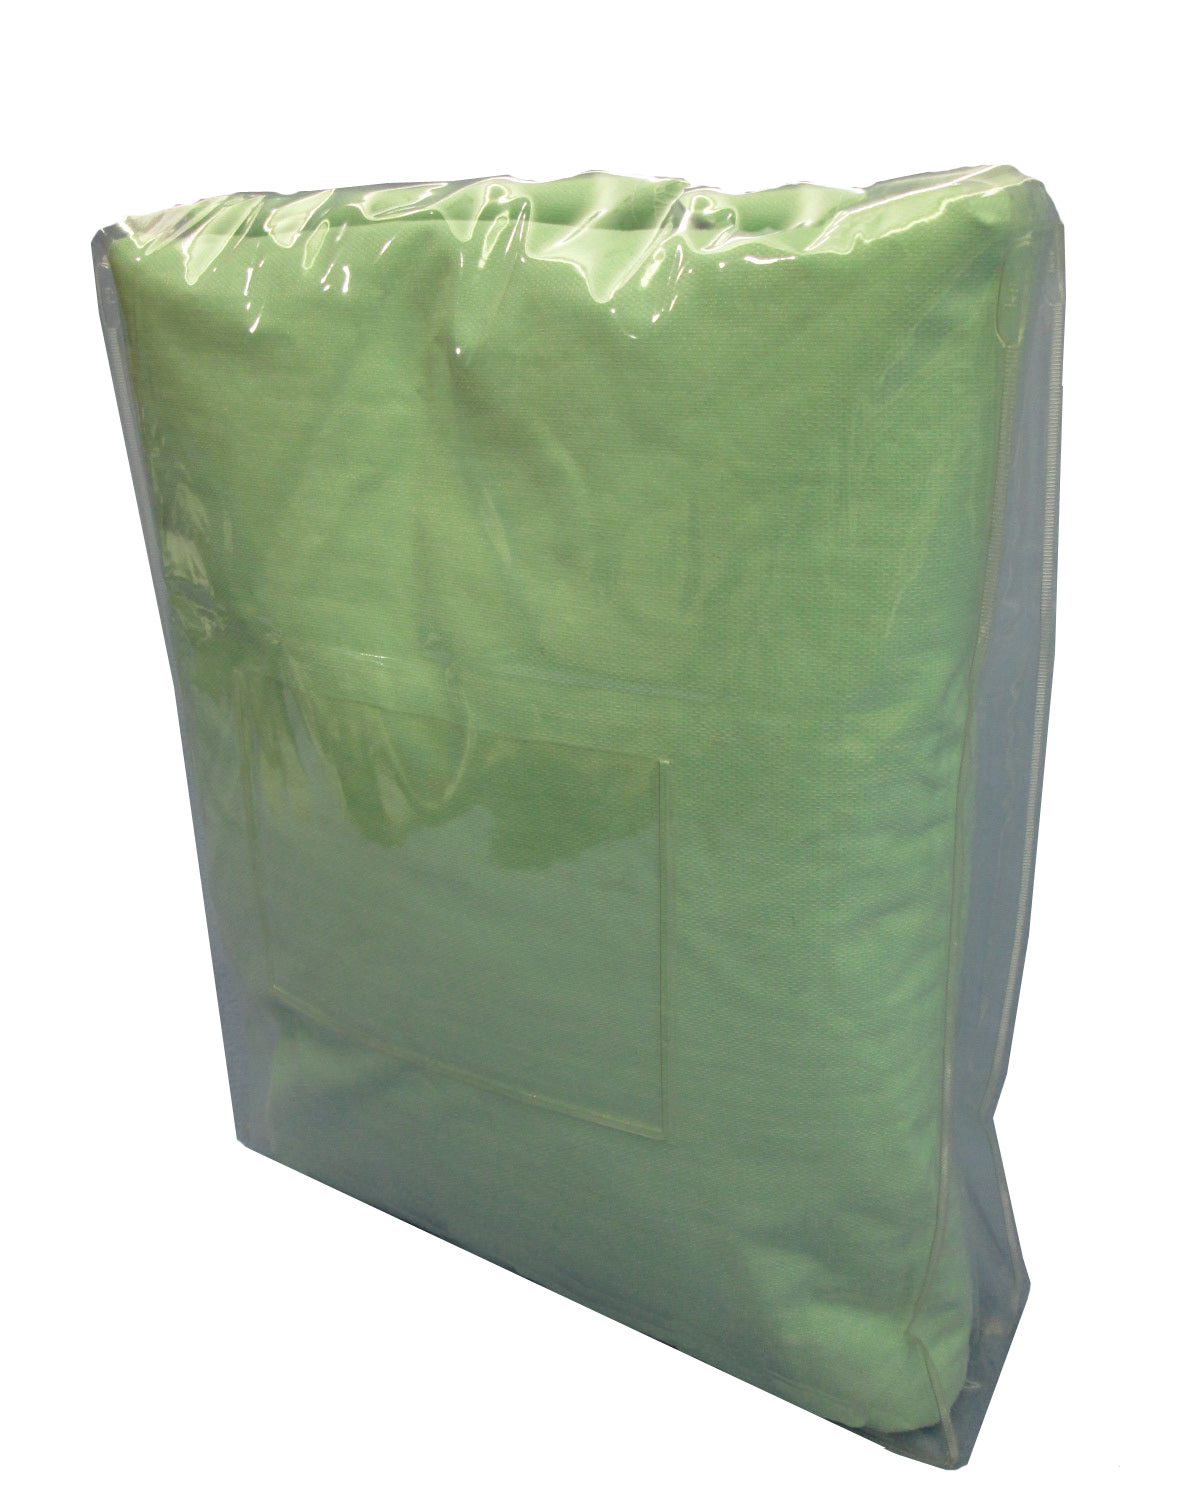 JLHS-0008 Heat-Sealed Bag